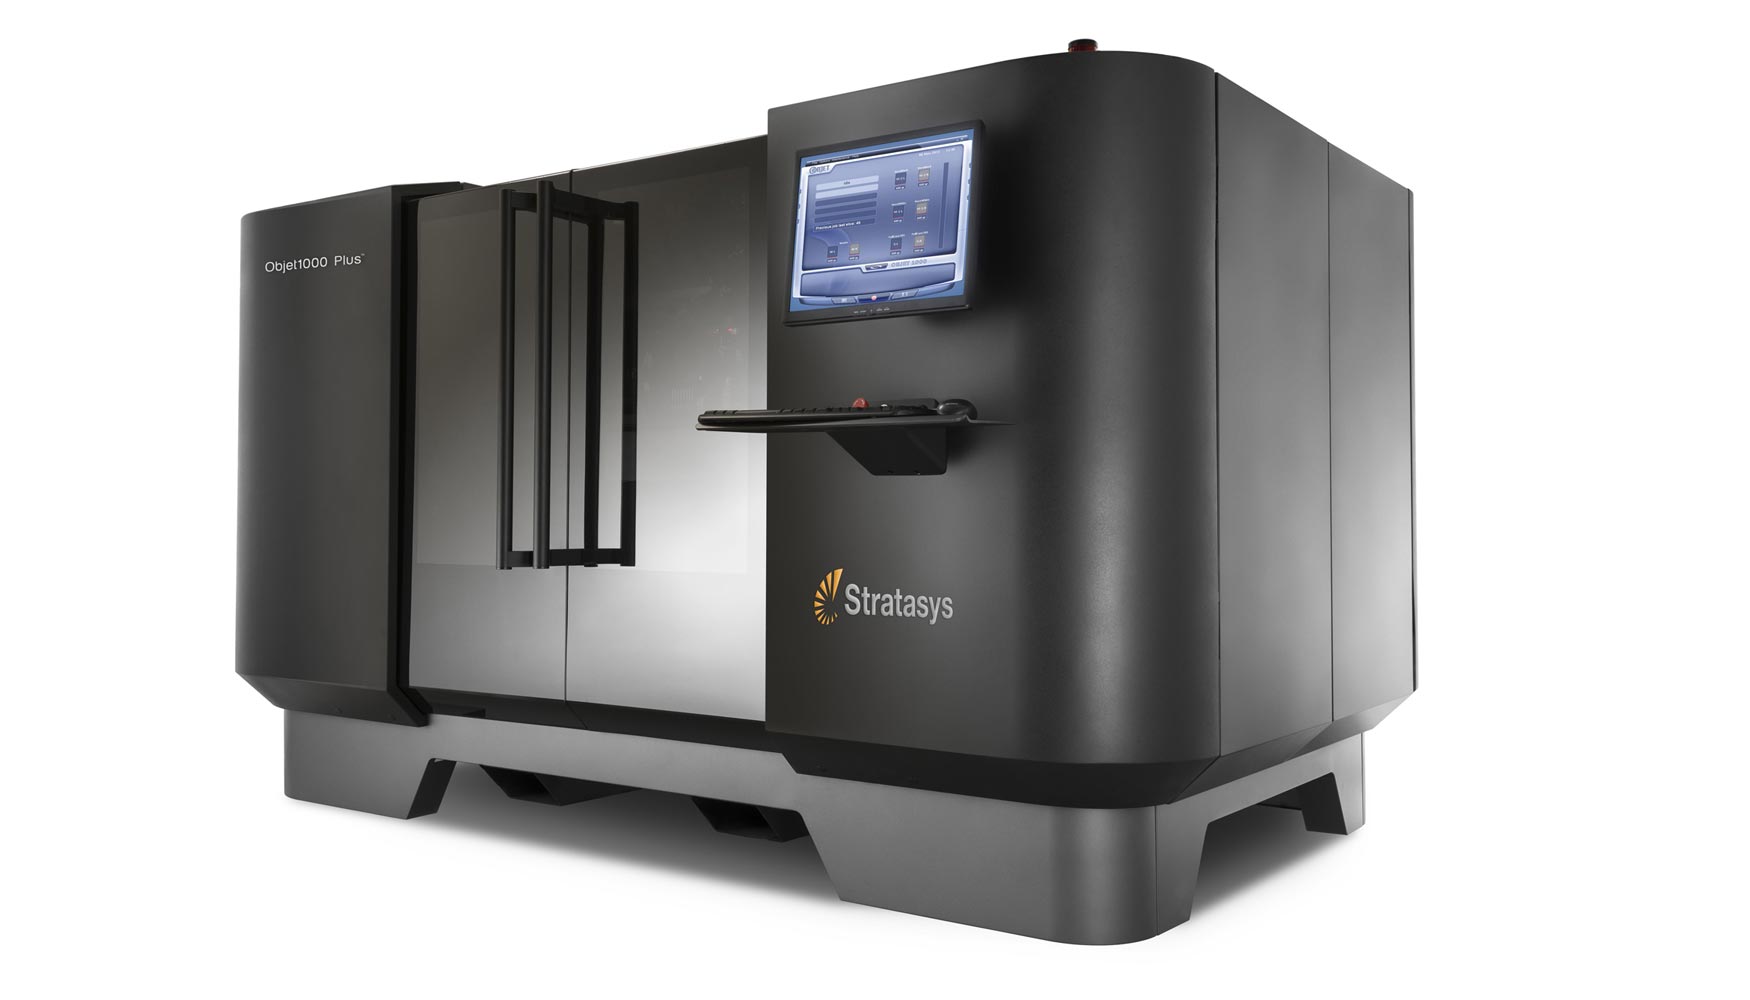 El sistema de produccin 3D Objet1000 Plus ofrece velocidades de impresin hasta un 40 por ciento ms altas que su predecesor y un coste por pieza...